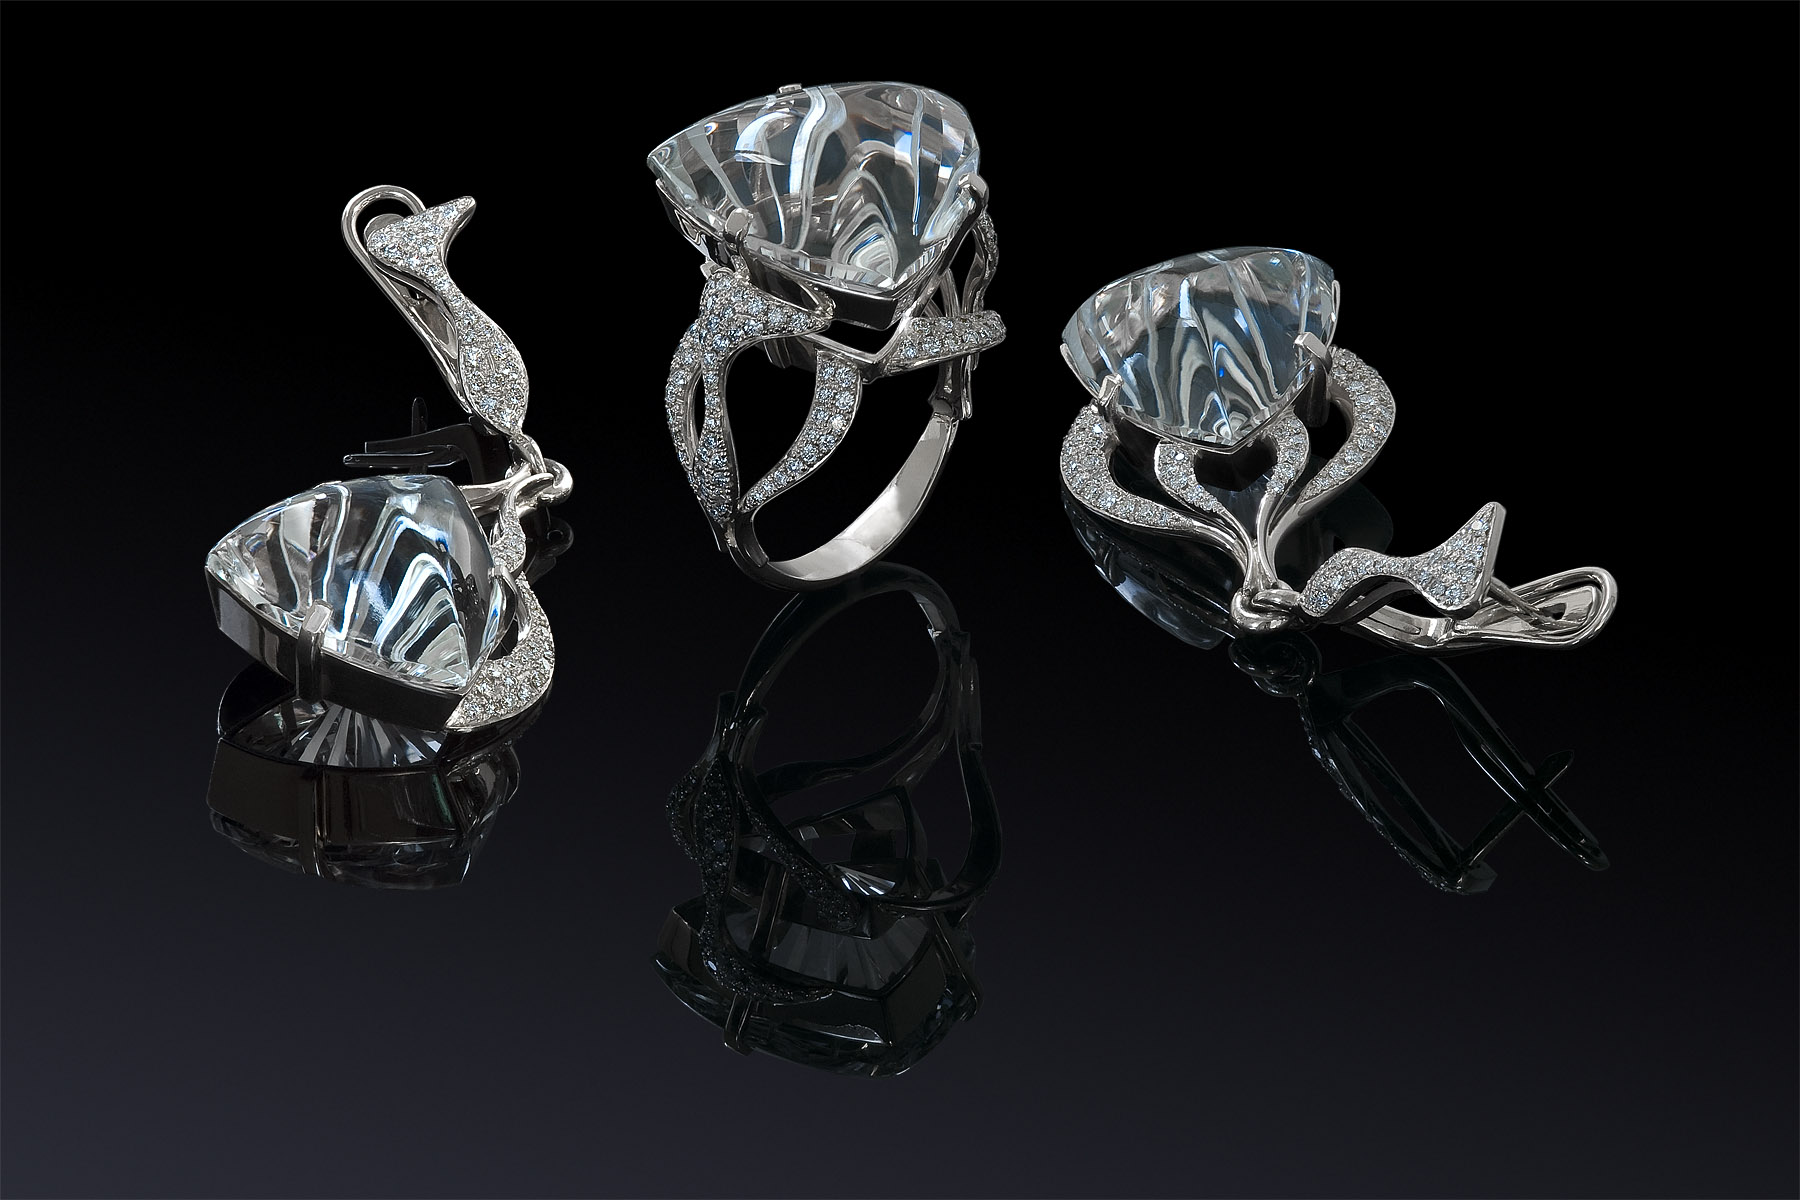 Diamond Jewelry. Jewelry Photography. Ювелирные изделия с топазами